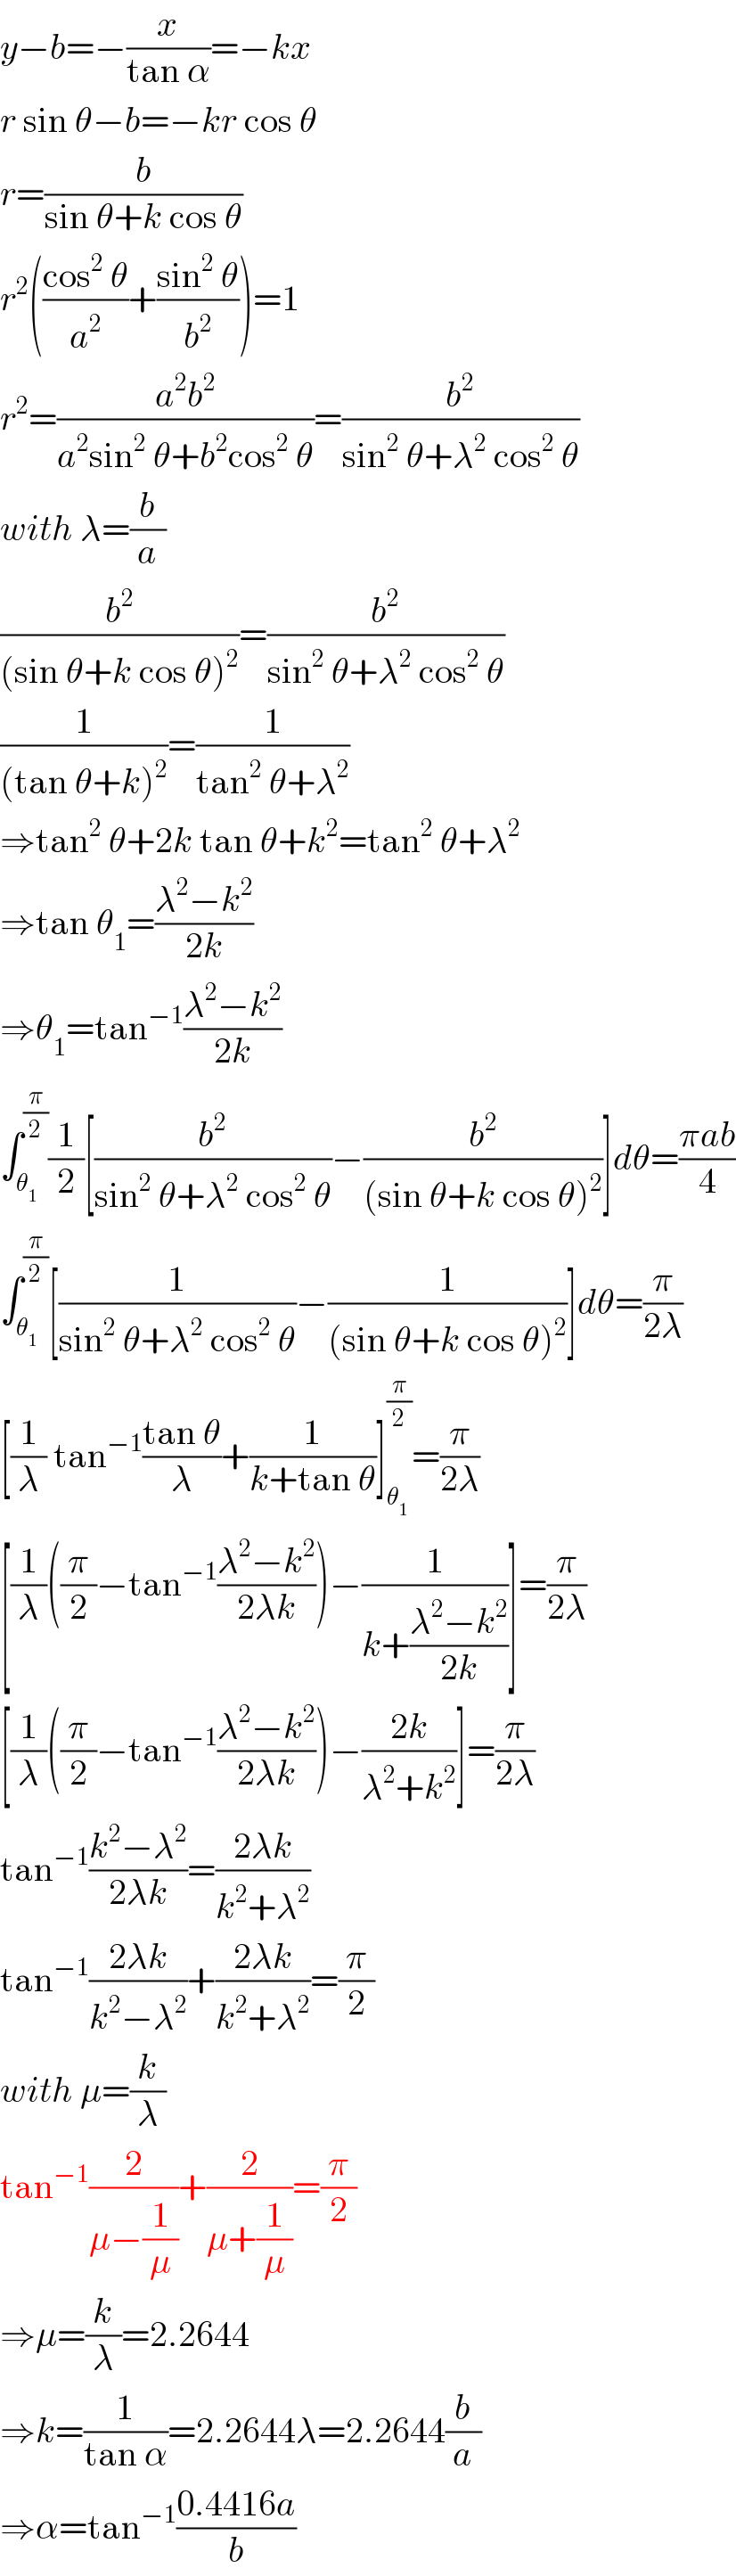 y−b=−(x/(tan α))=−kx  r sin θ−b=−kr cos θ  r=(b/(sin θ+k cos θ))  r^2 (((cos^2  θ)/a^2 )+((sin^2  θ)/b^2 ))=1  r^2 =((a^2 b^2 )/(a^2 sin^2  θ+b^2 cos^2  θ))=(b^2 /(sin^2  θ+λ^2  cos^2  θ))  with λ=(b/a)  (b^2 /((sin θ+k cos θ)^2 ))=(b^2 /(sin^2  θ+λ^2  cos^2  θ))  (1/((tan θ+k)^2 ))=(1/(tan^2  θ+λ^2 ))  ⇒tan^2  θ+2k tan θ+k^2 =tan^2  θ+λ^2   ⇒tan θ_1 =((λ^2 −k^2 )/(2k))  ⇒θ_1 =tan^(−1) ((λ^2 −k^2 )/(2k))  ∫_θ_1  ^(π/2) (1/2)[(b^2 /(sin^2  θ+λ^2  cos^2  θ))−(b^2 /((sin θ+k cos θ)^2 ))]dθ=((πab)/4)  ∫_θ_1  ^(π/2) [(1/(sin^2  θ+λ^2  cos^2  θ))−(1/((sin θ+k cos θ)^2 ))]dθ=(π/(2λ))  [(1/λ) tan^(−1) ((tan θ)/λ)+(1/(k+tan θ))]_θ_1  ^(π/2) =(π/(2λ))  [(1/λ)((π/2)−tan^(−1) ((λ^2 −k^2 )/(2λk)))−(1/(k+((λ^2 −k^2 )/(2k))))]=(π/(2λ))  [(1/λ)((π/2)−tan^(−1) ((λ^2 −k^2 )/(2λk)))−((2k)/(λ^2 +k^2 ))]=(π/(2λ))  tan^(−1) ((k^2 −λ^2 )/(2λk))=((2λk)/(k^2 +λ^2 ))  tan^(−1) ((2λk)/(k^2 −λ^2 ))+((2λk)/(k^2 +λ^2 ))=(π/2)  with μ=(k/λ)  tan^(−1) (2/(μ−(1/μ)))+(2/(μ+(1/μ)))=(π/2)  ⇒μ=(k/λ)=2.2644  ⇒k=(1/(tan α))=2.2644λ=2.2644(b/a)  ⇒α=tan^(−1) ((0.4416a)/b)  